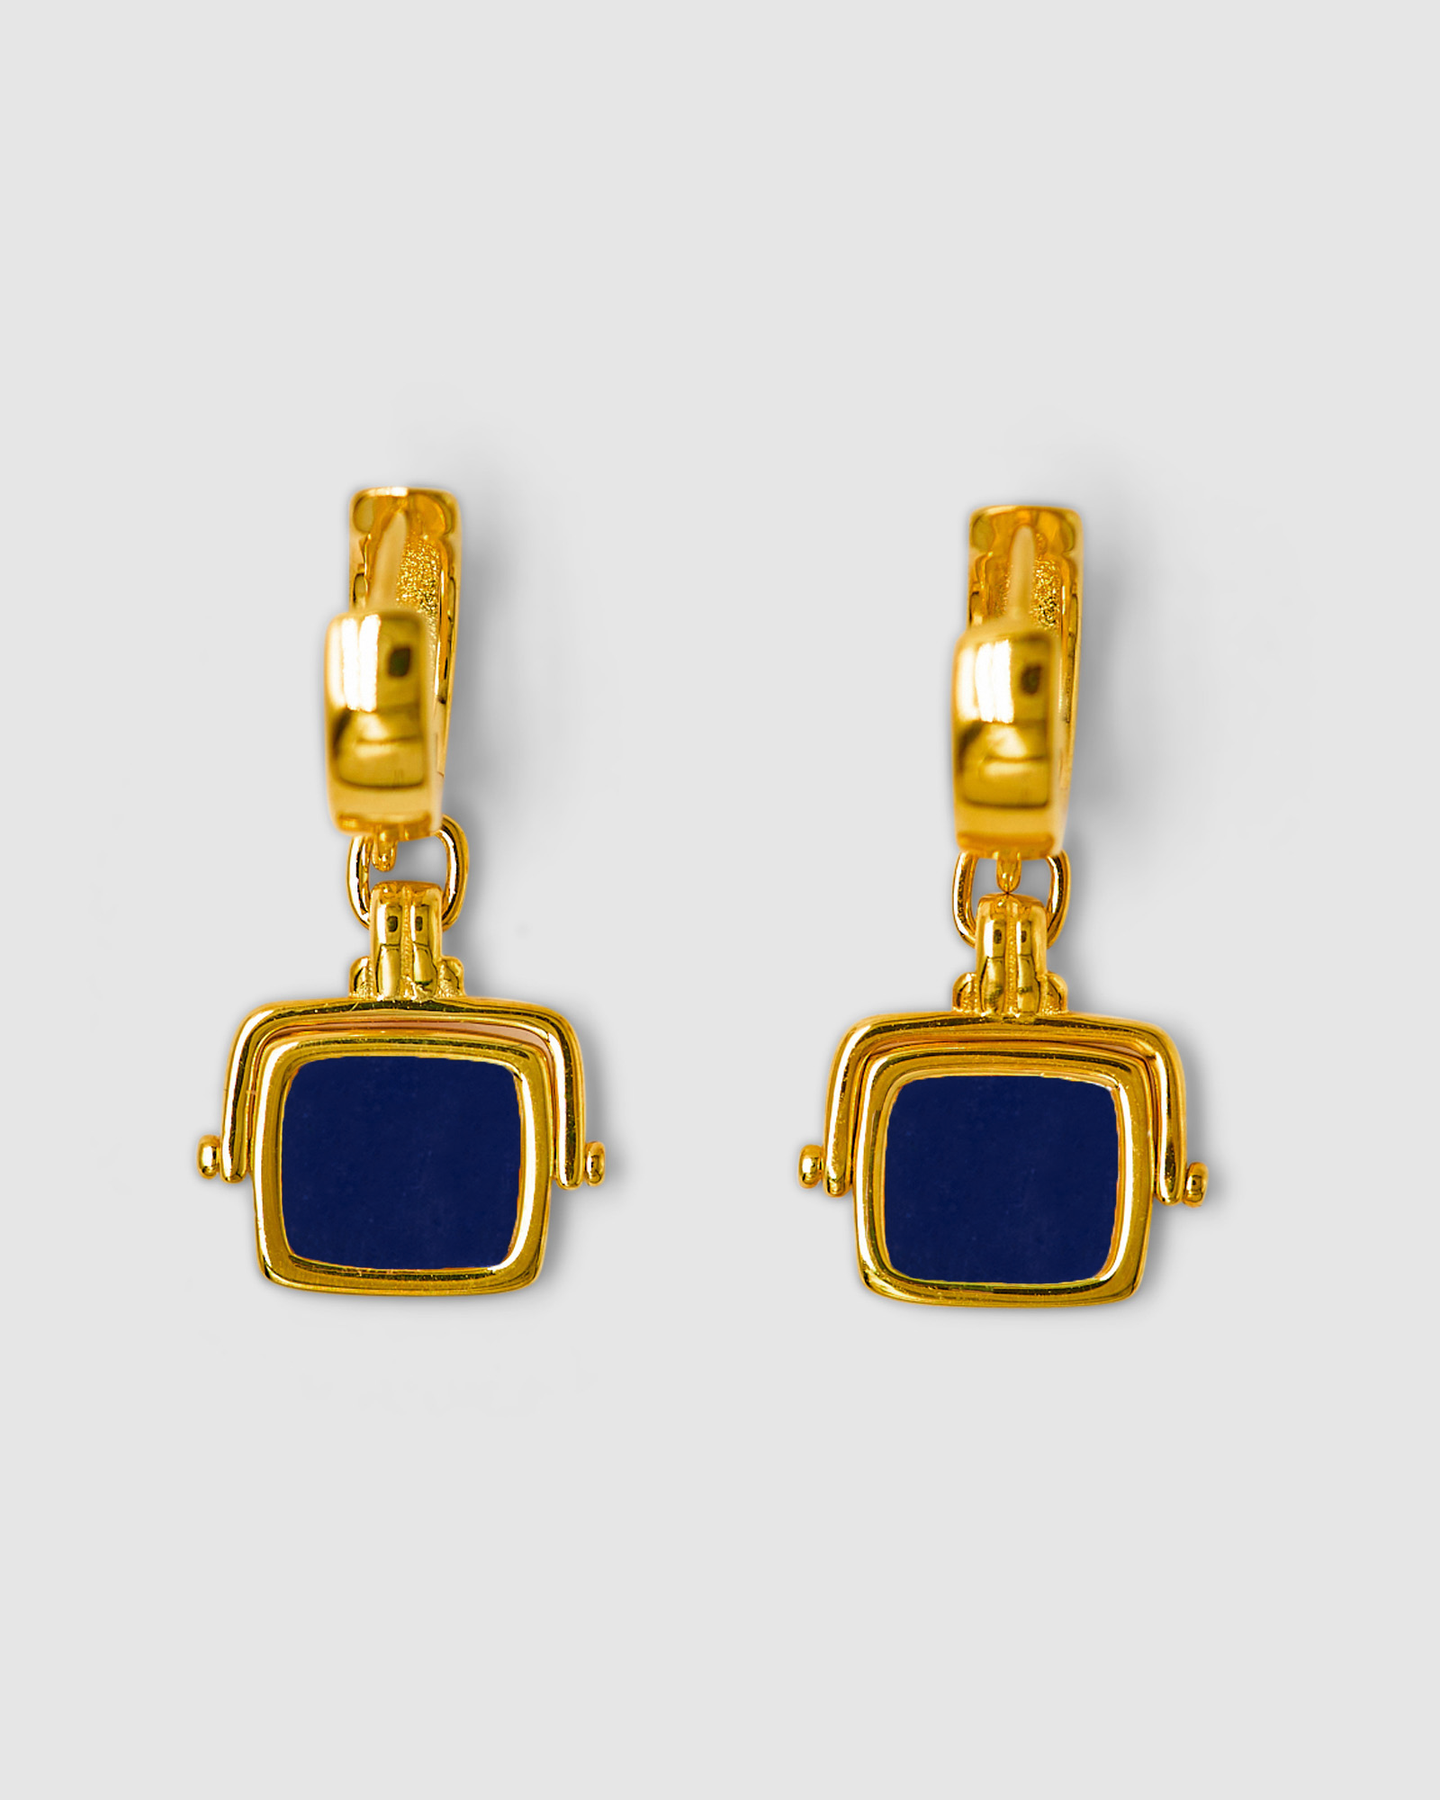 Santiago Jewelry Box for Drop Earrings / Pendant